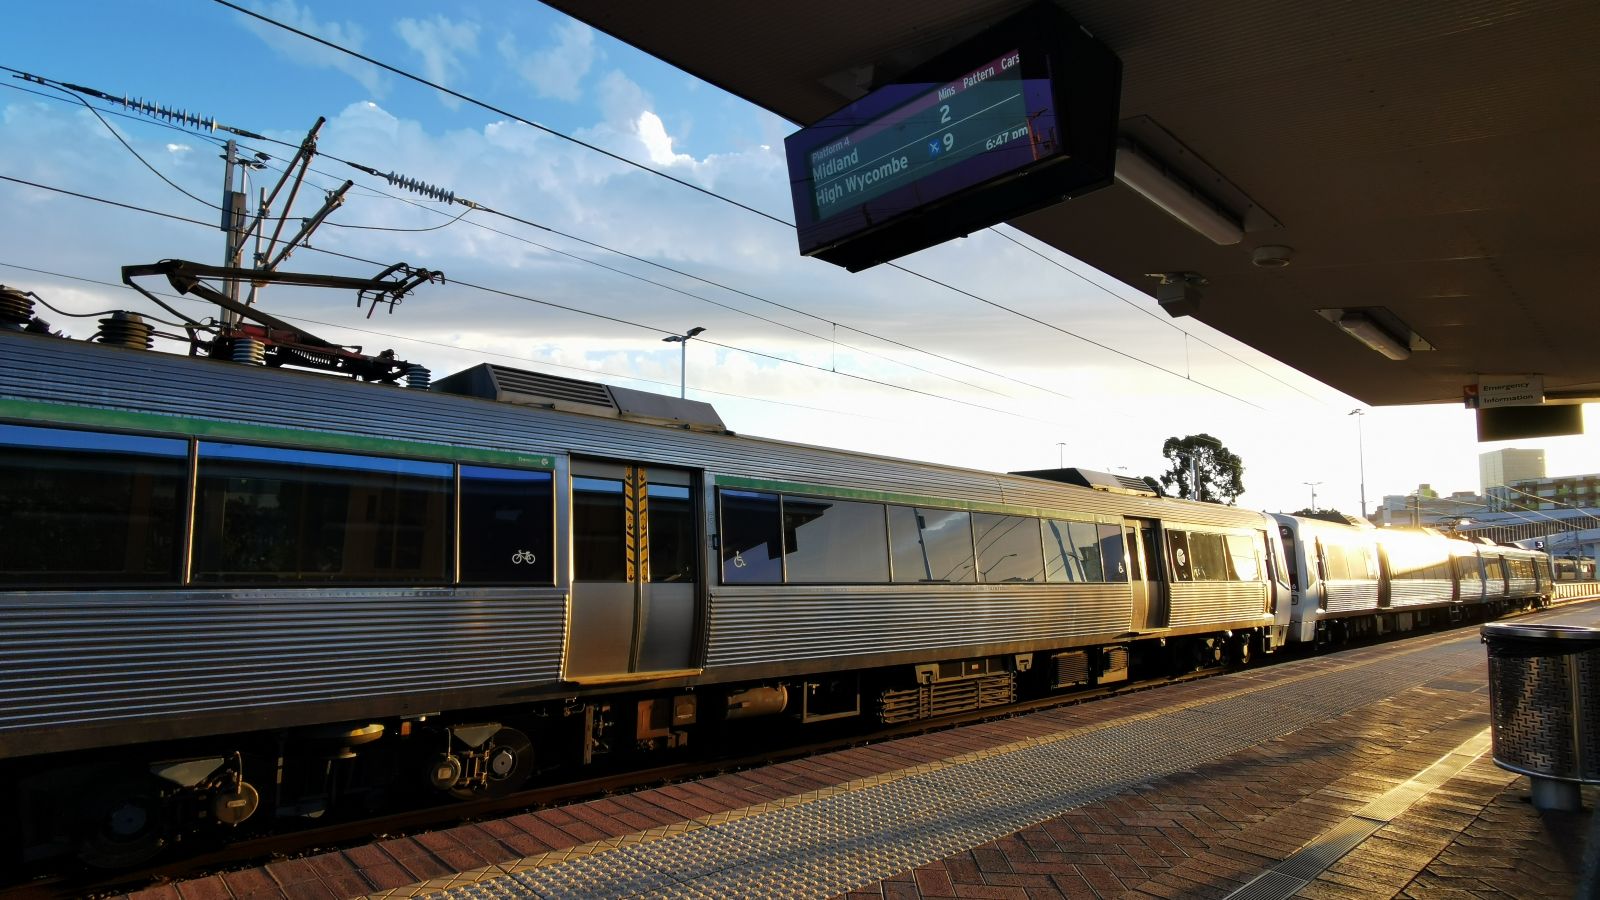 Perth Airport Line train